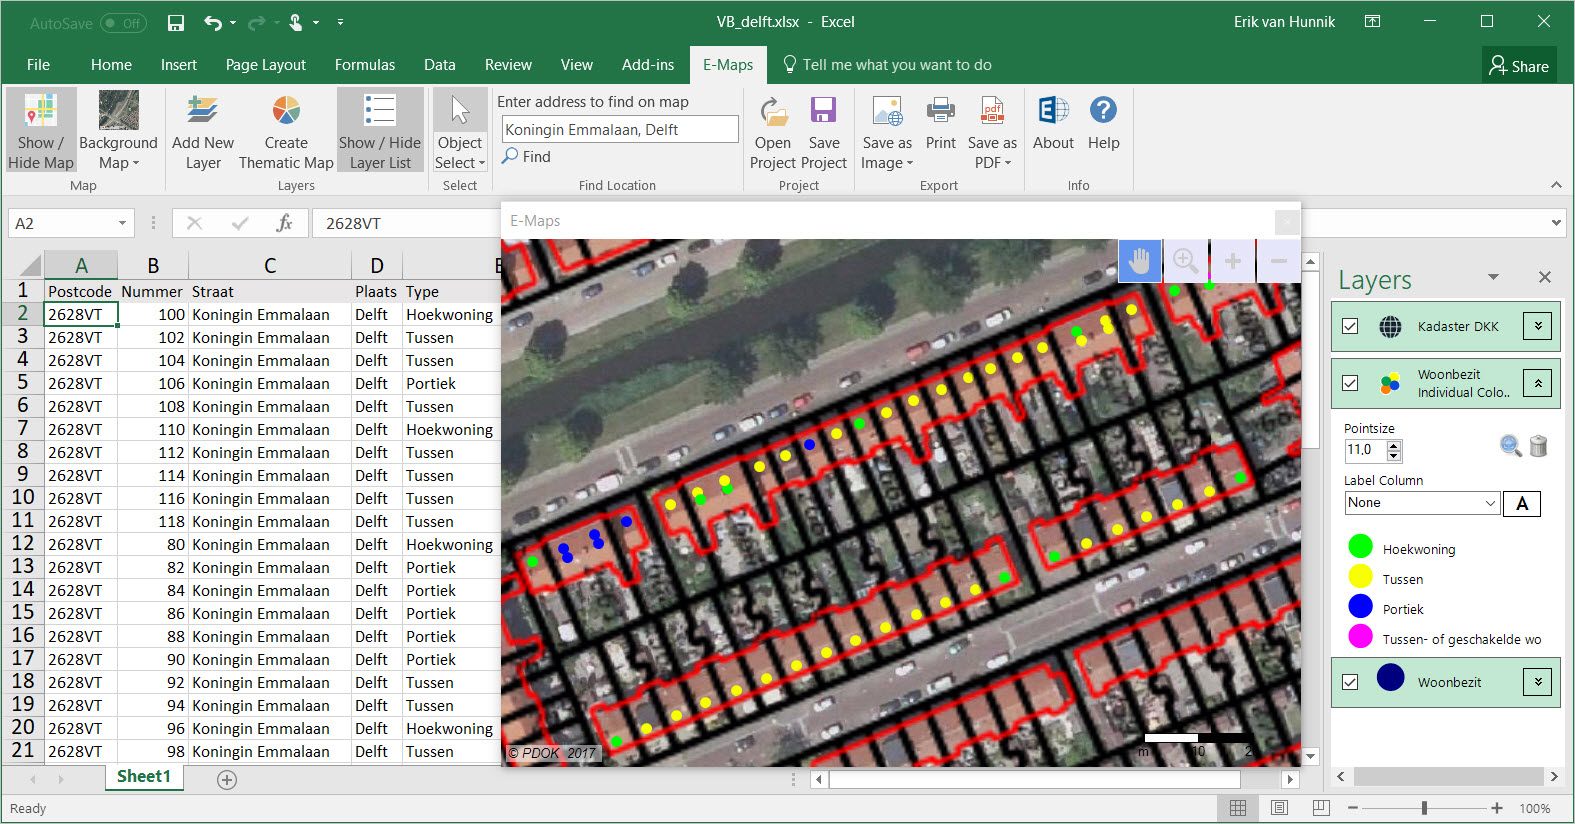 Uw vastgoed geografisch in kaart gebracht met Excel E-Maps